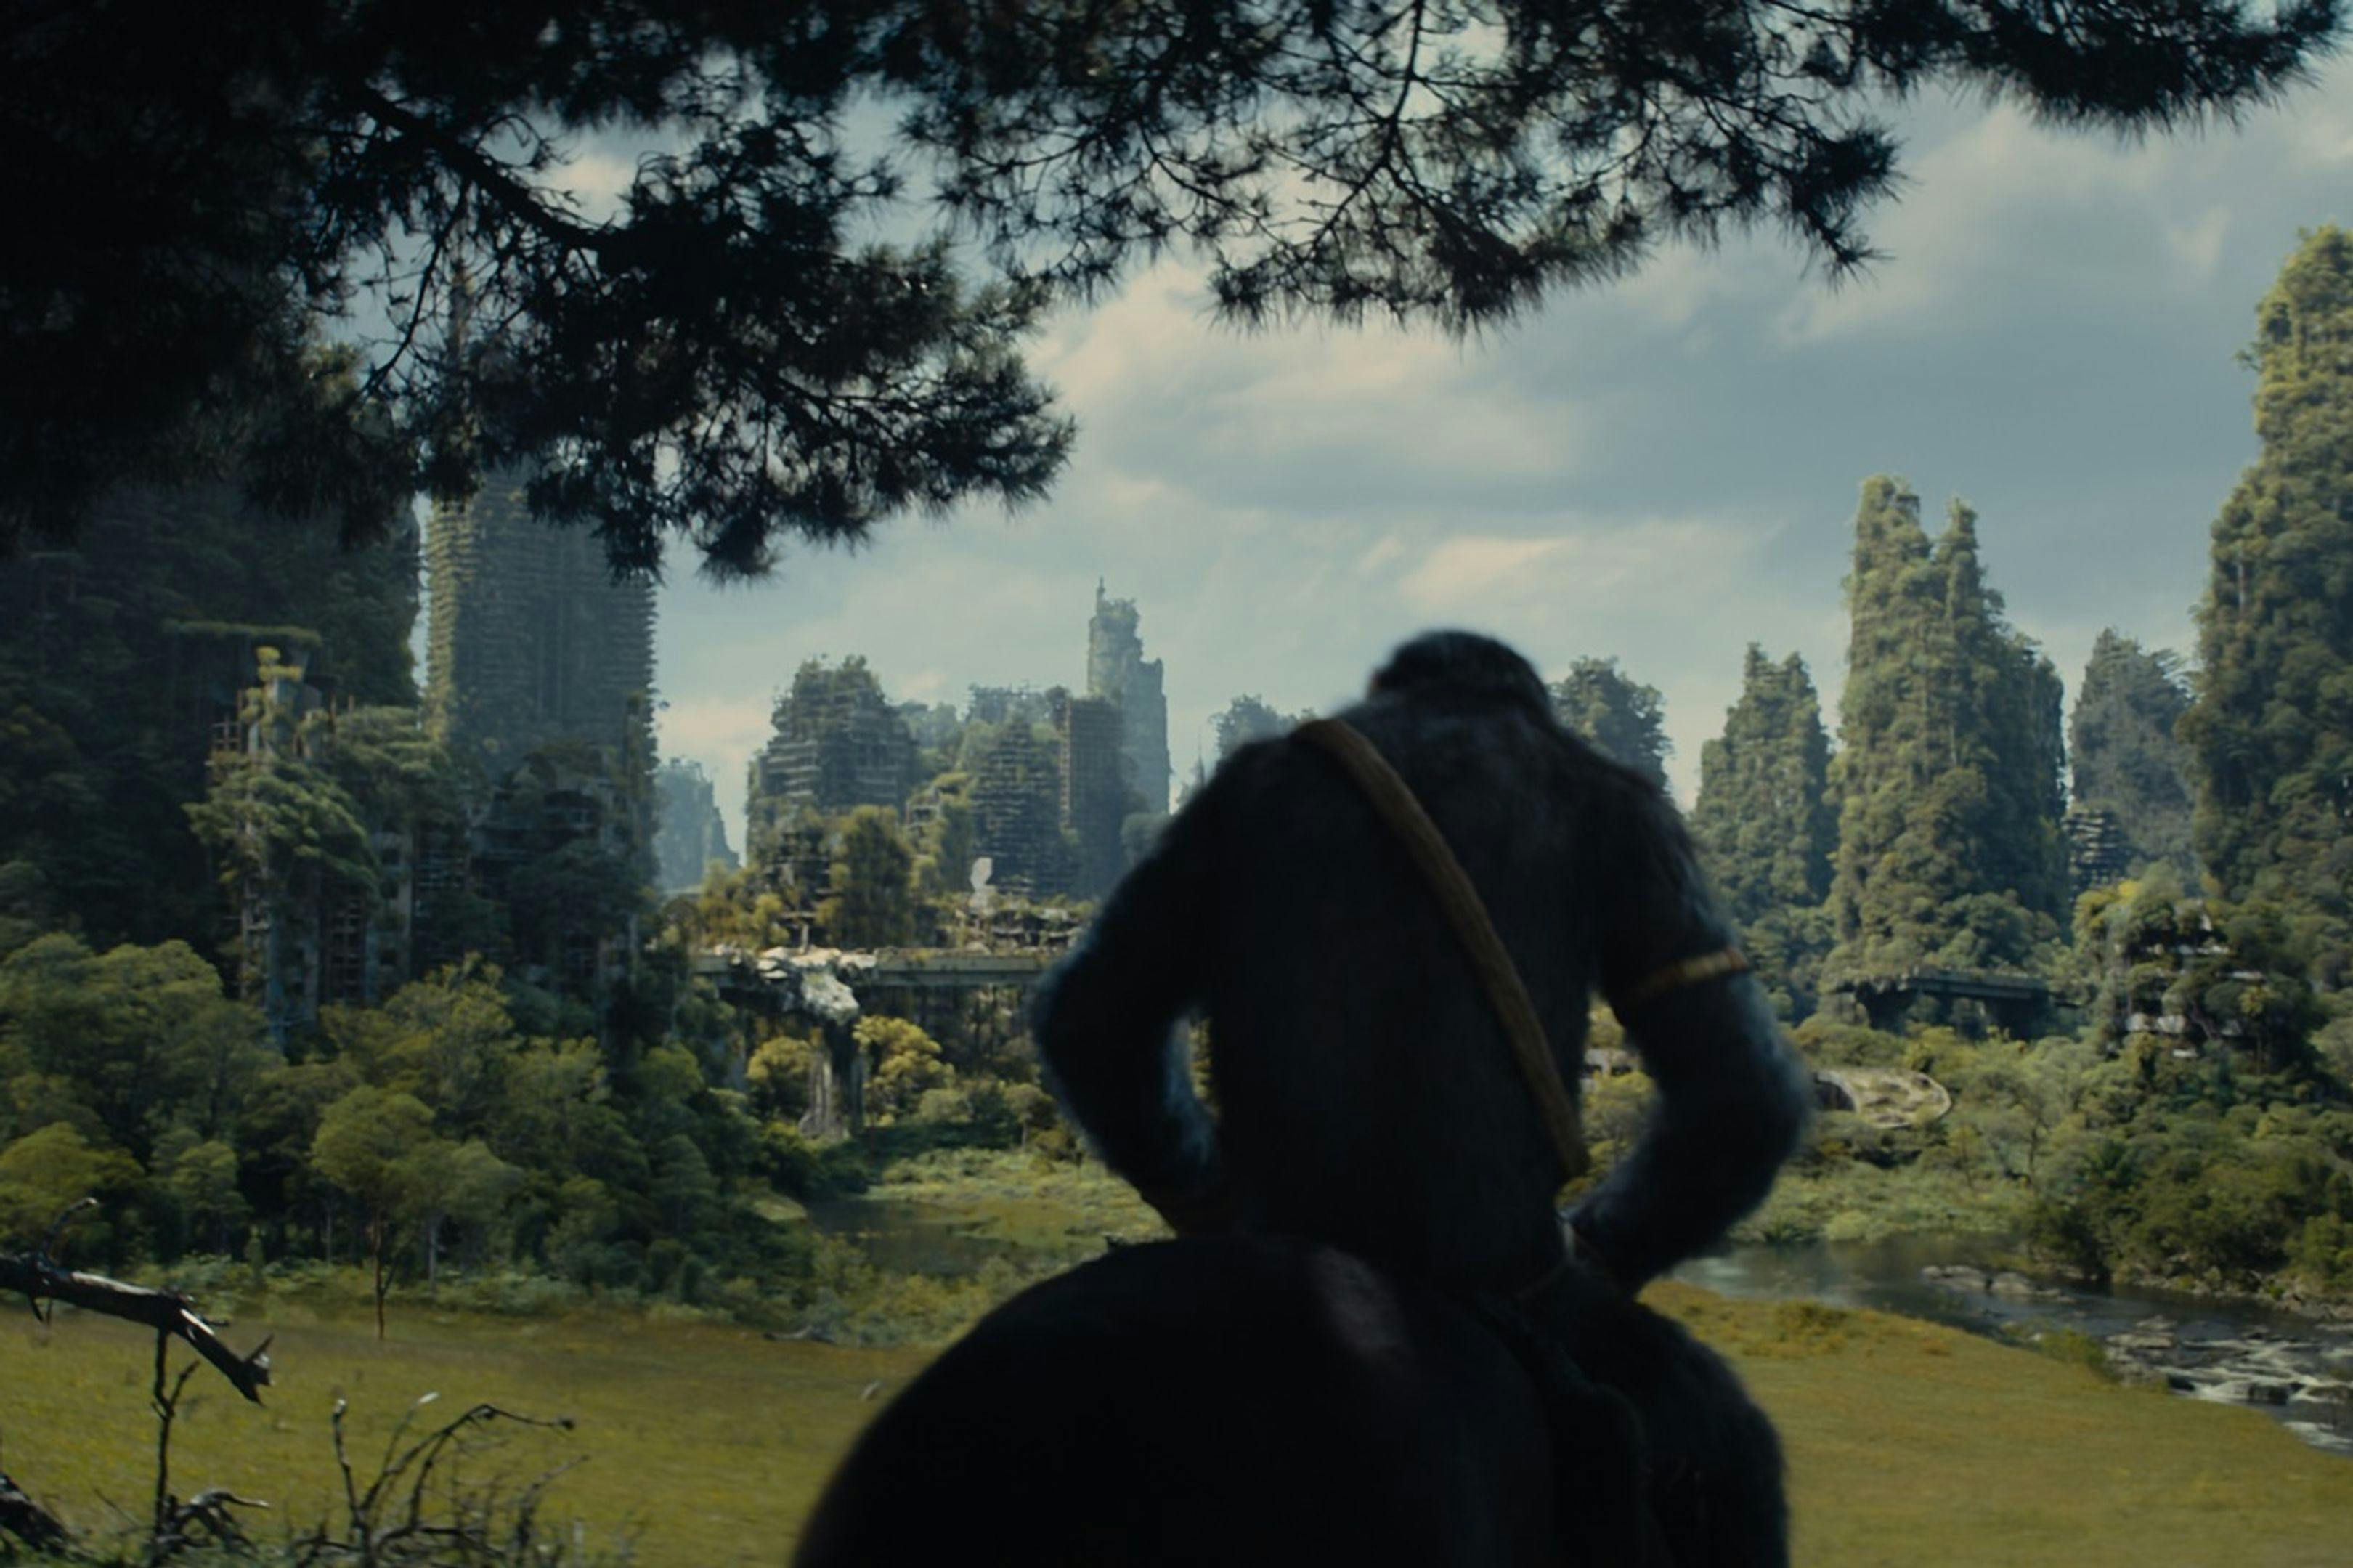 Fotograma promocional de 'El reino del planeta de los simios' con Noa, su protagonista, llegando a los restos de una ciudad